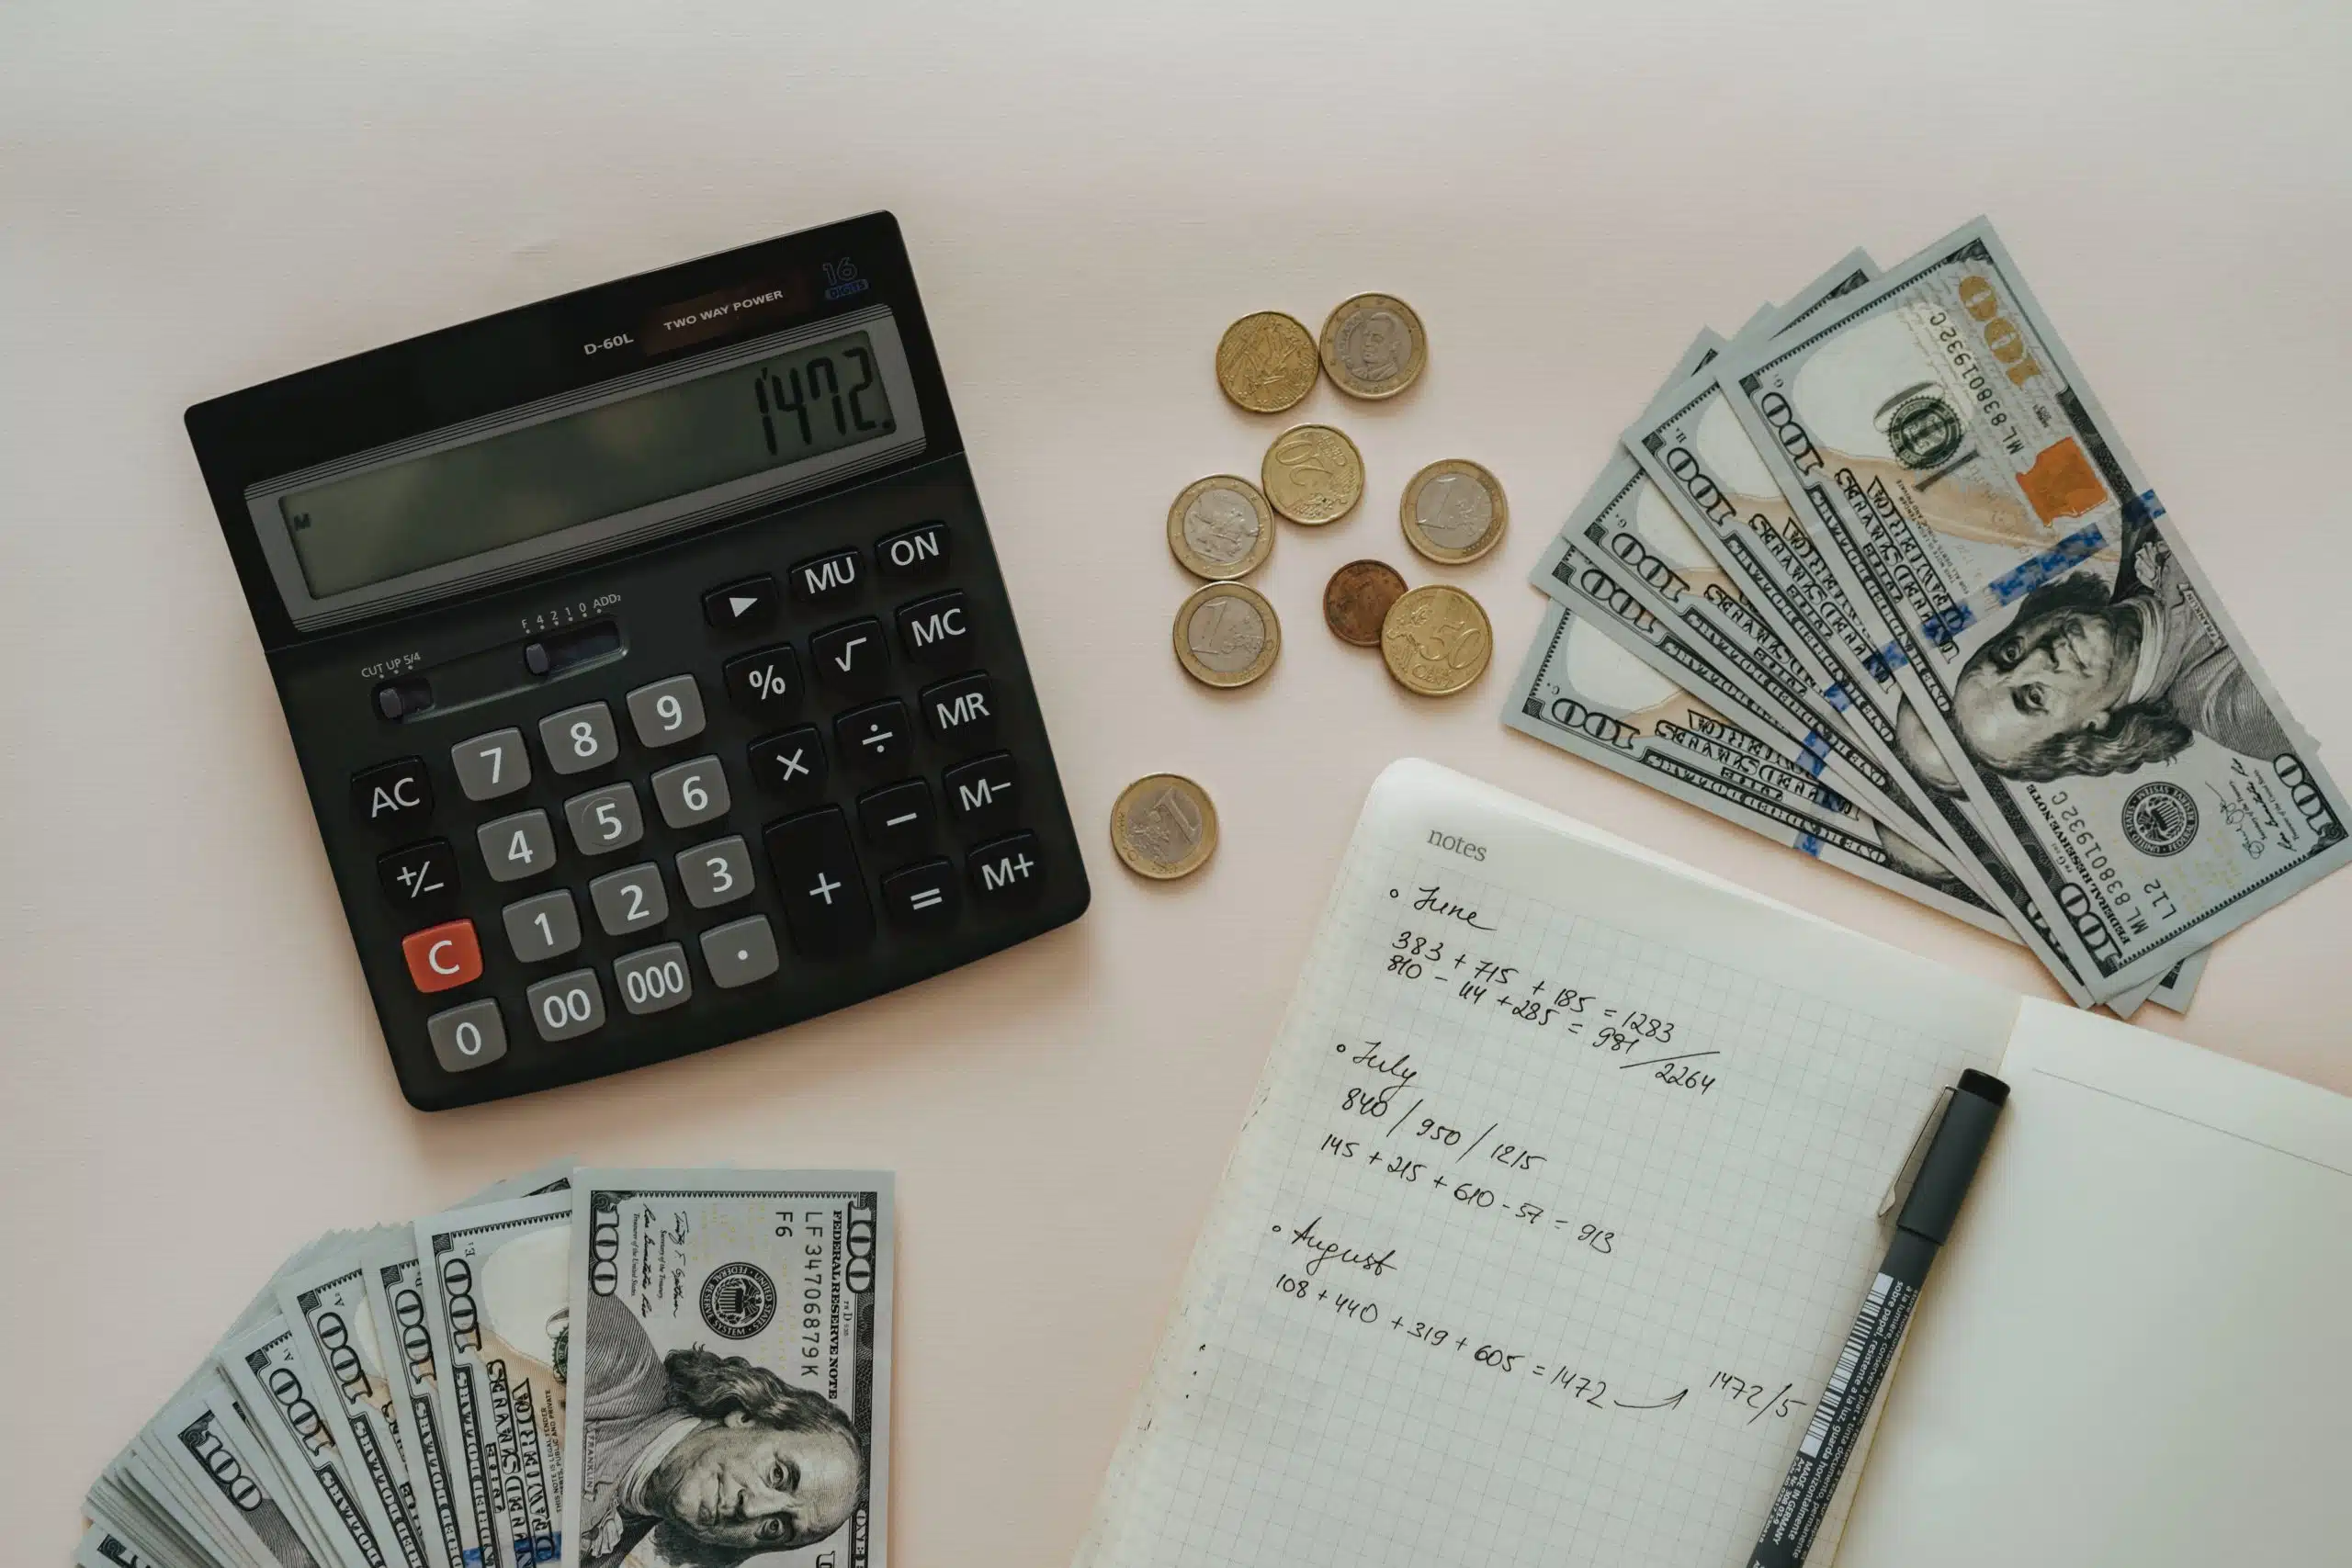 calculator, dollar bills, coins, notebook and a pen